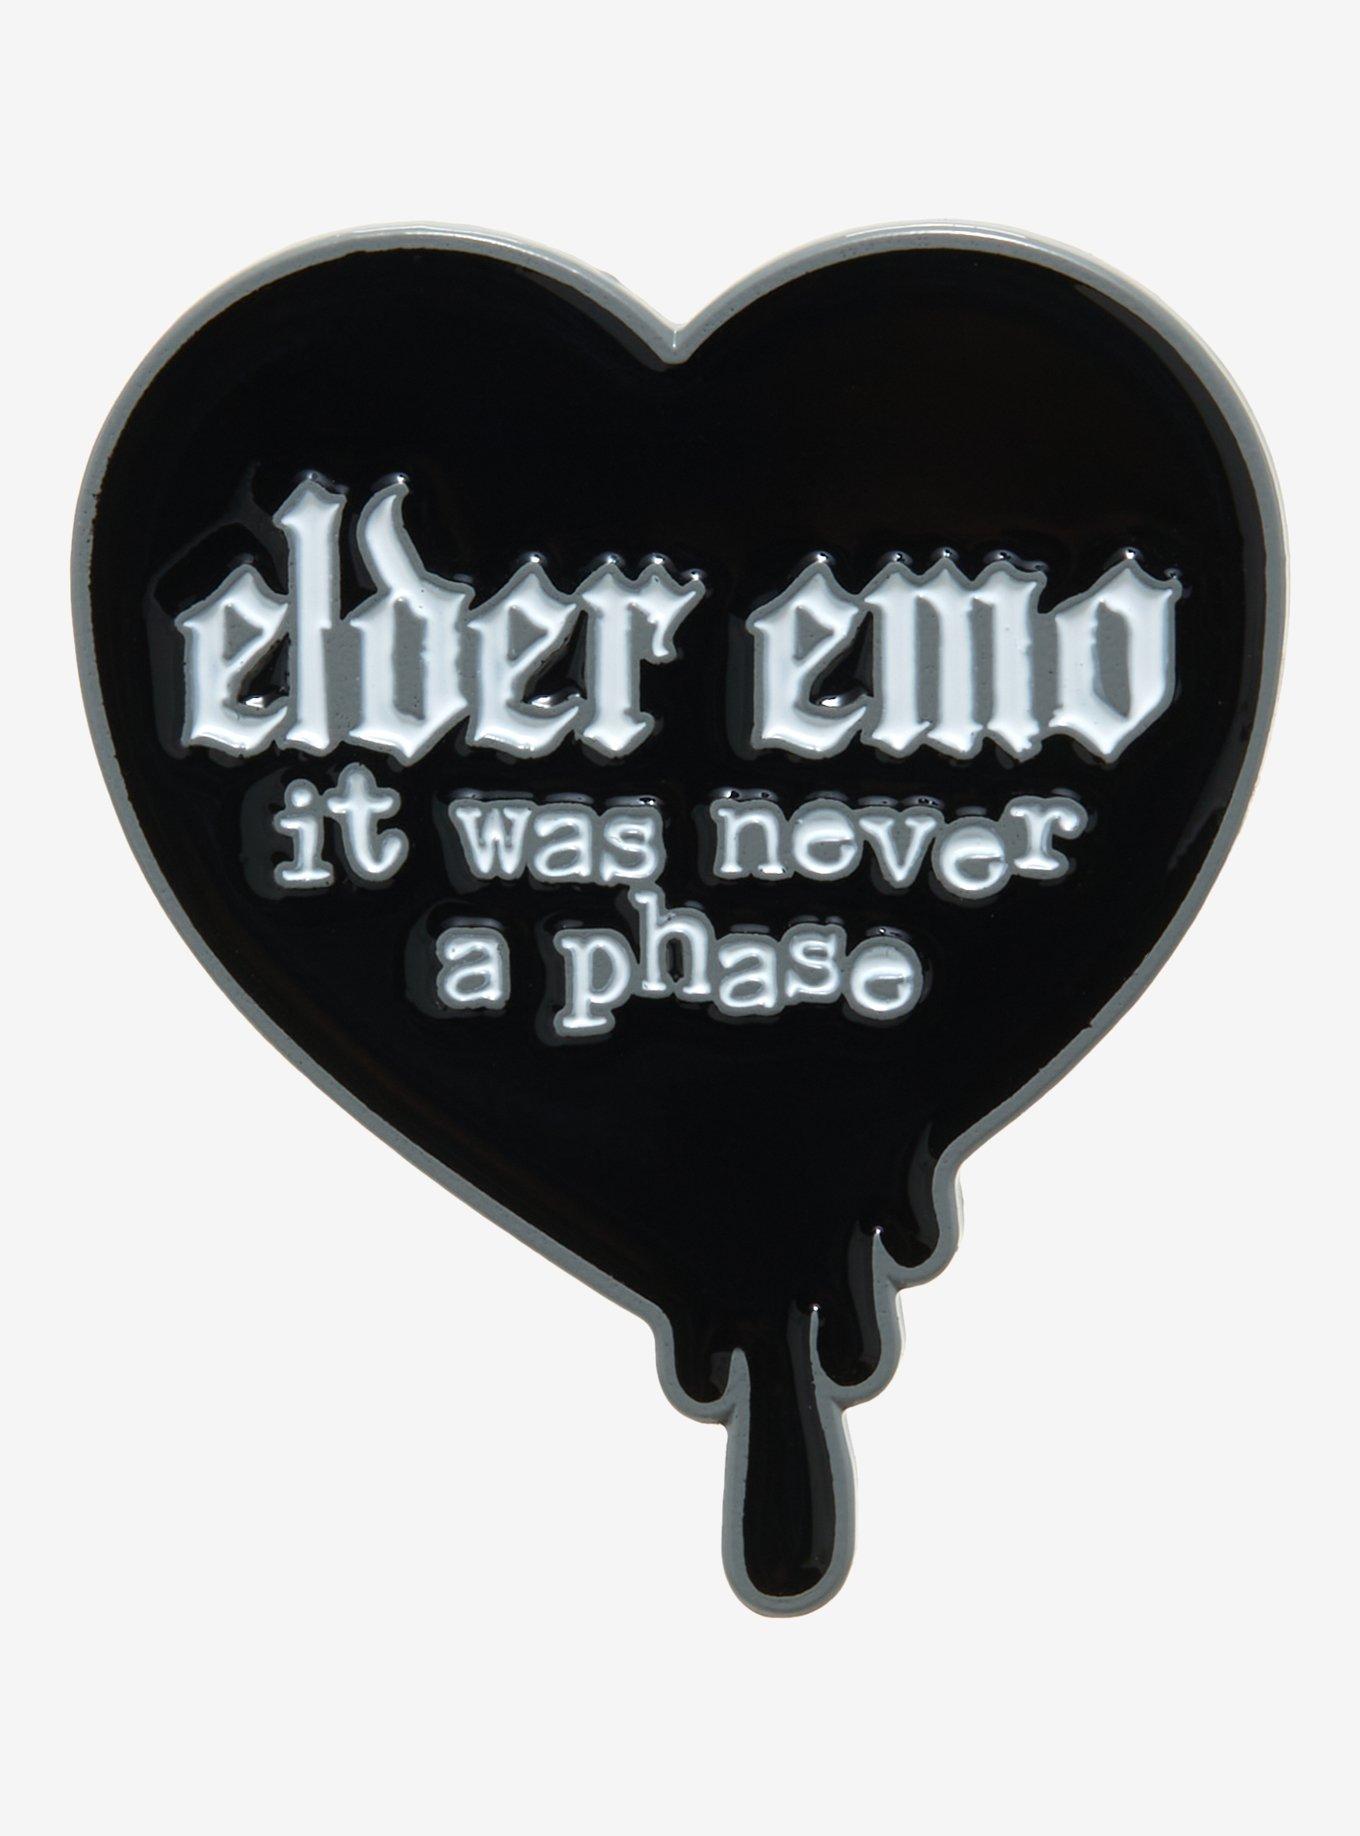 Elder Emo Button Badge, Black & White, Forever Emo, Pin Back Button Badge,  Emo Pin, Emo Gift, Accessories, 38mm badge, OG, Millennial Scene